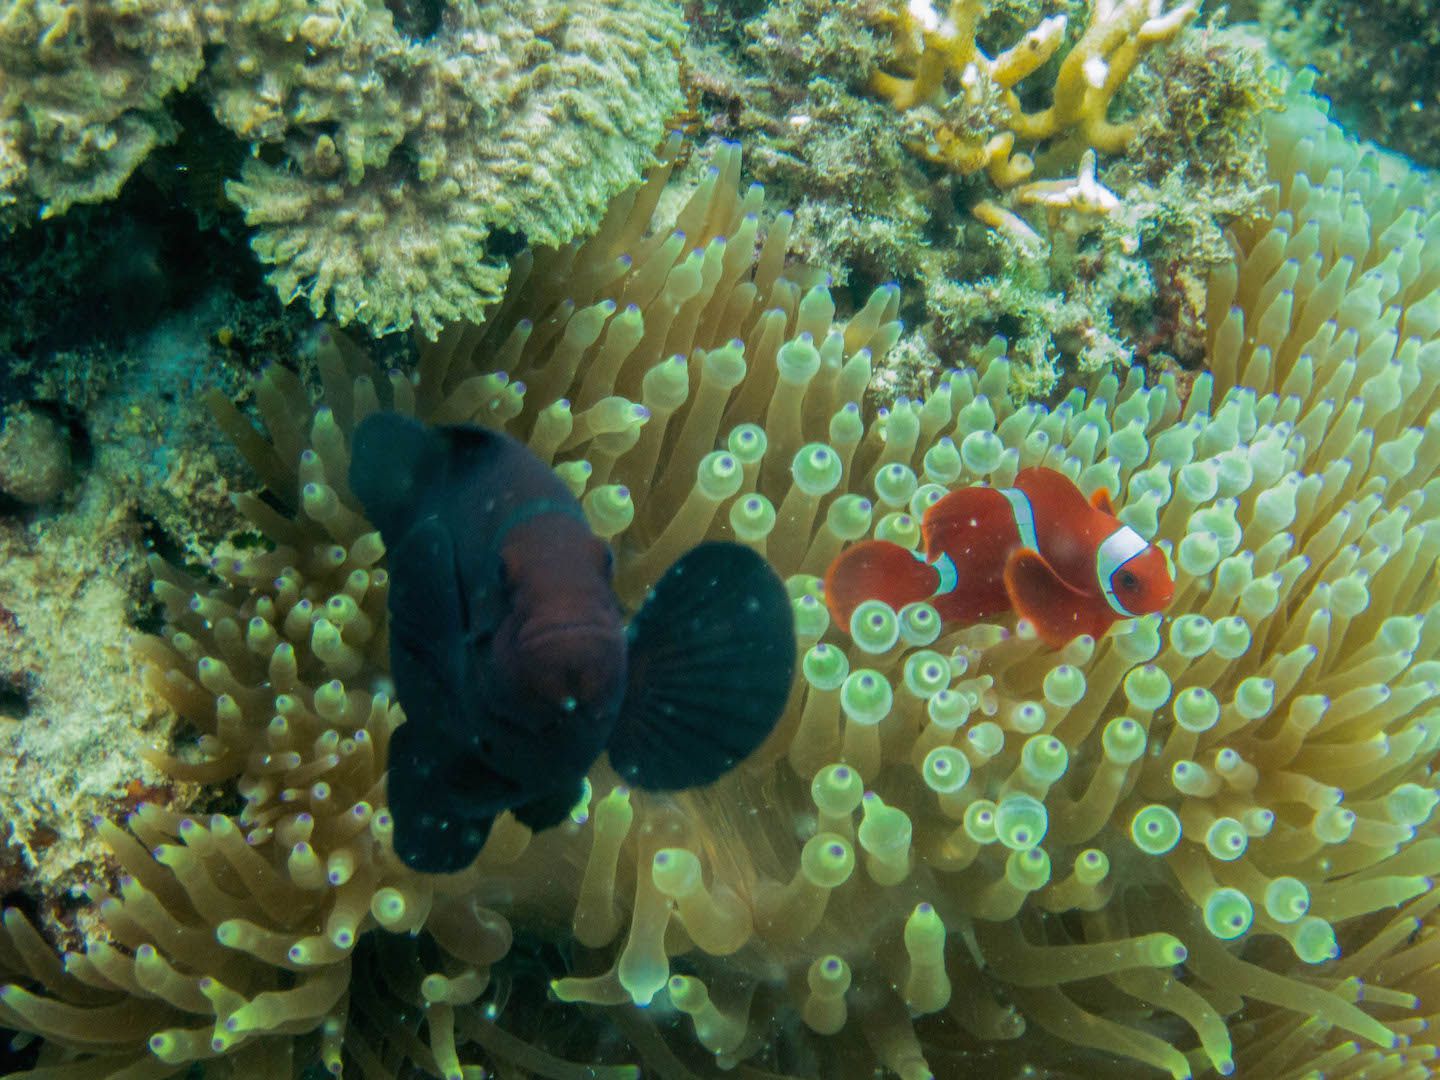 Cute clown fish at Natnat Dive Site, El Nido, Philippines